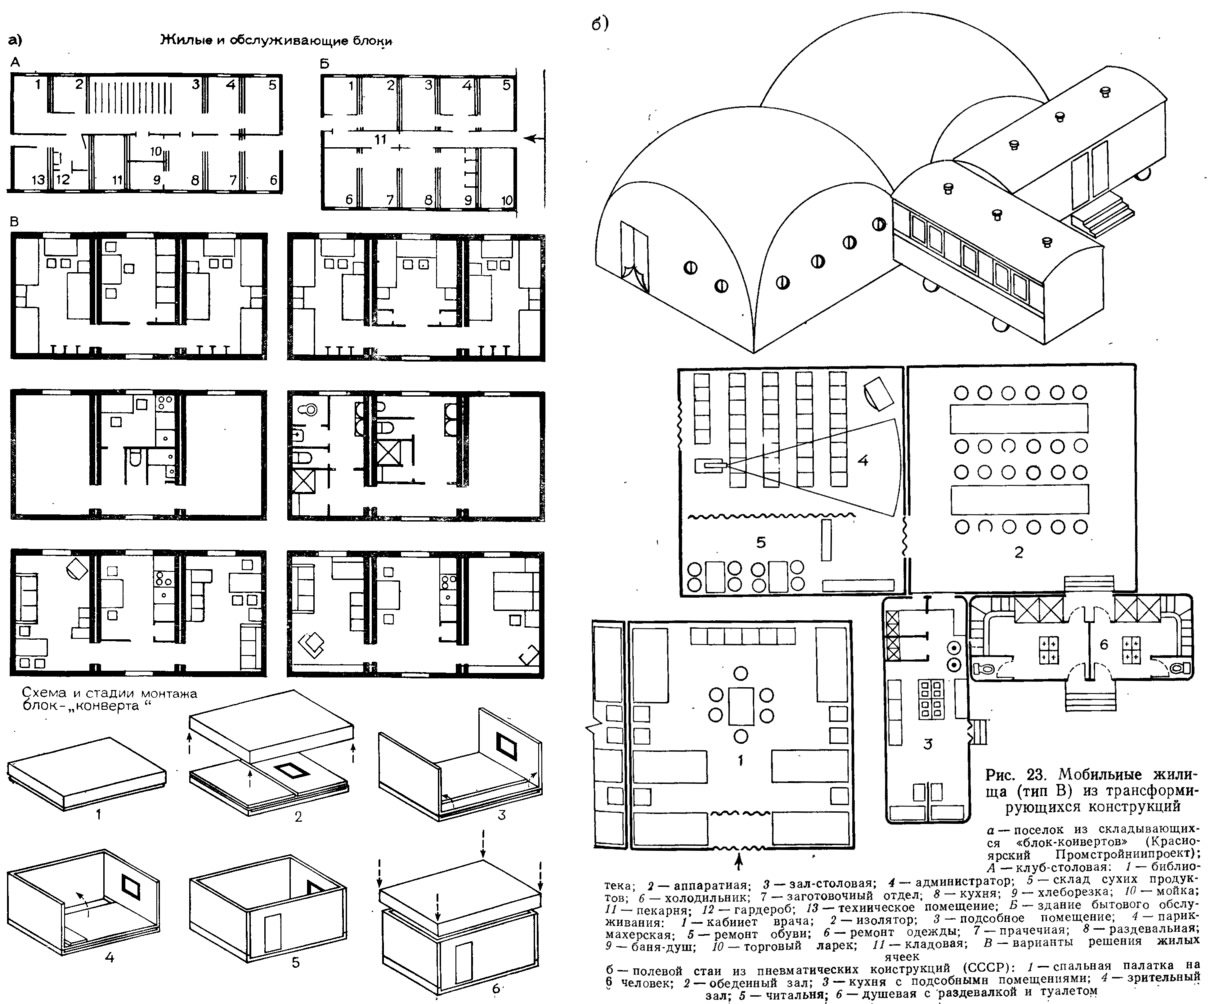 Рис. 23. Мобильные жилища (тип В) из трансформирующихся конструкций